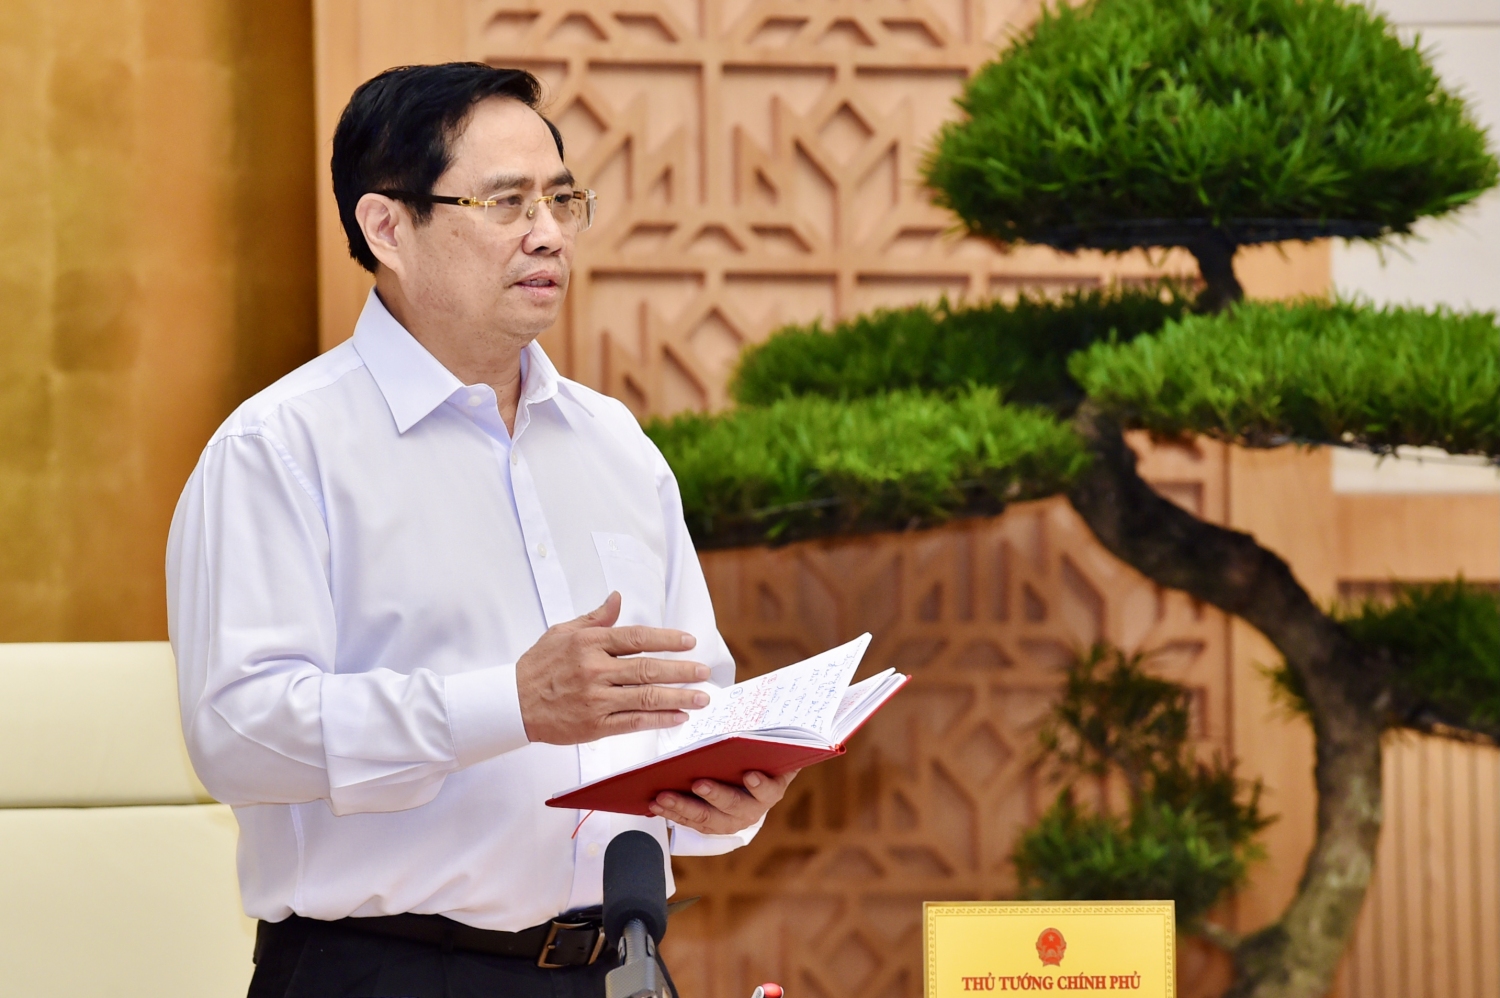 Thủ tướng Phạm Minh Chính yêu cầu căn cứ tình hình cụ thể để xác định thứ tự ưu tiên giữa chống dịch và phát triển kinh tế - xã hội. Ảnh: VGP/Nhật Bắc